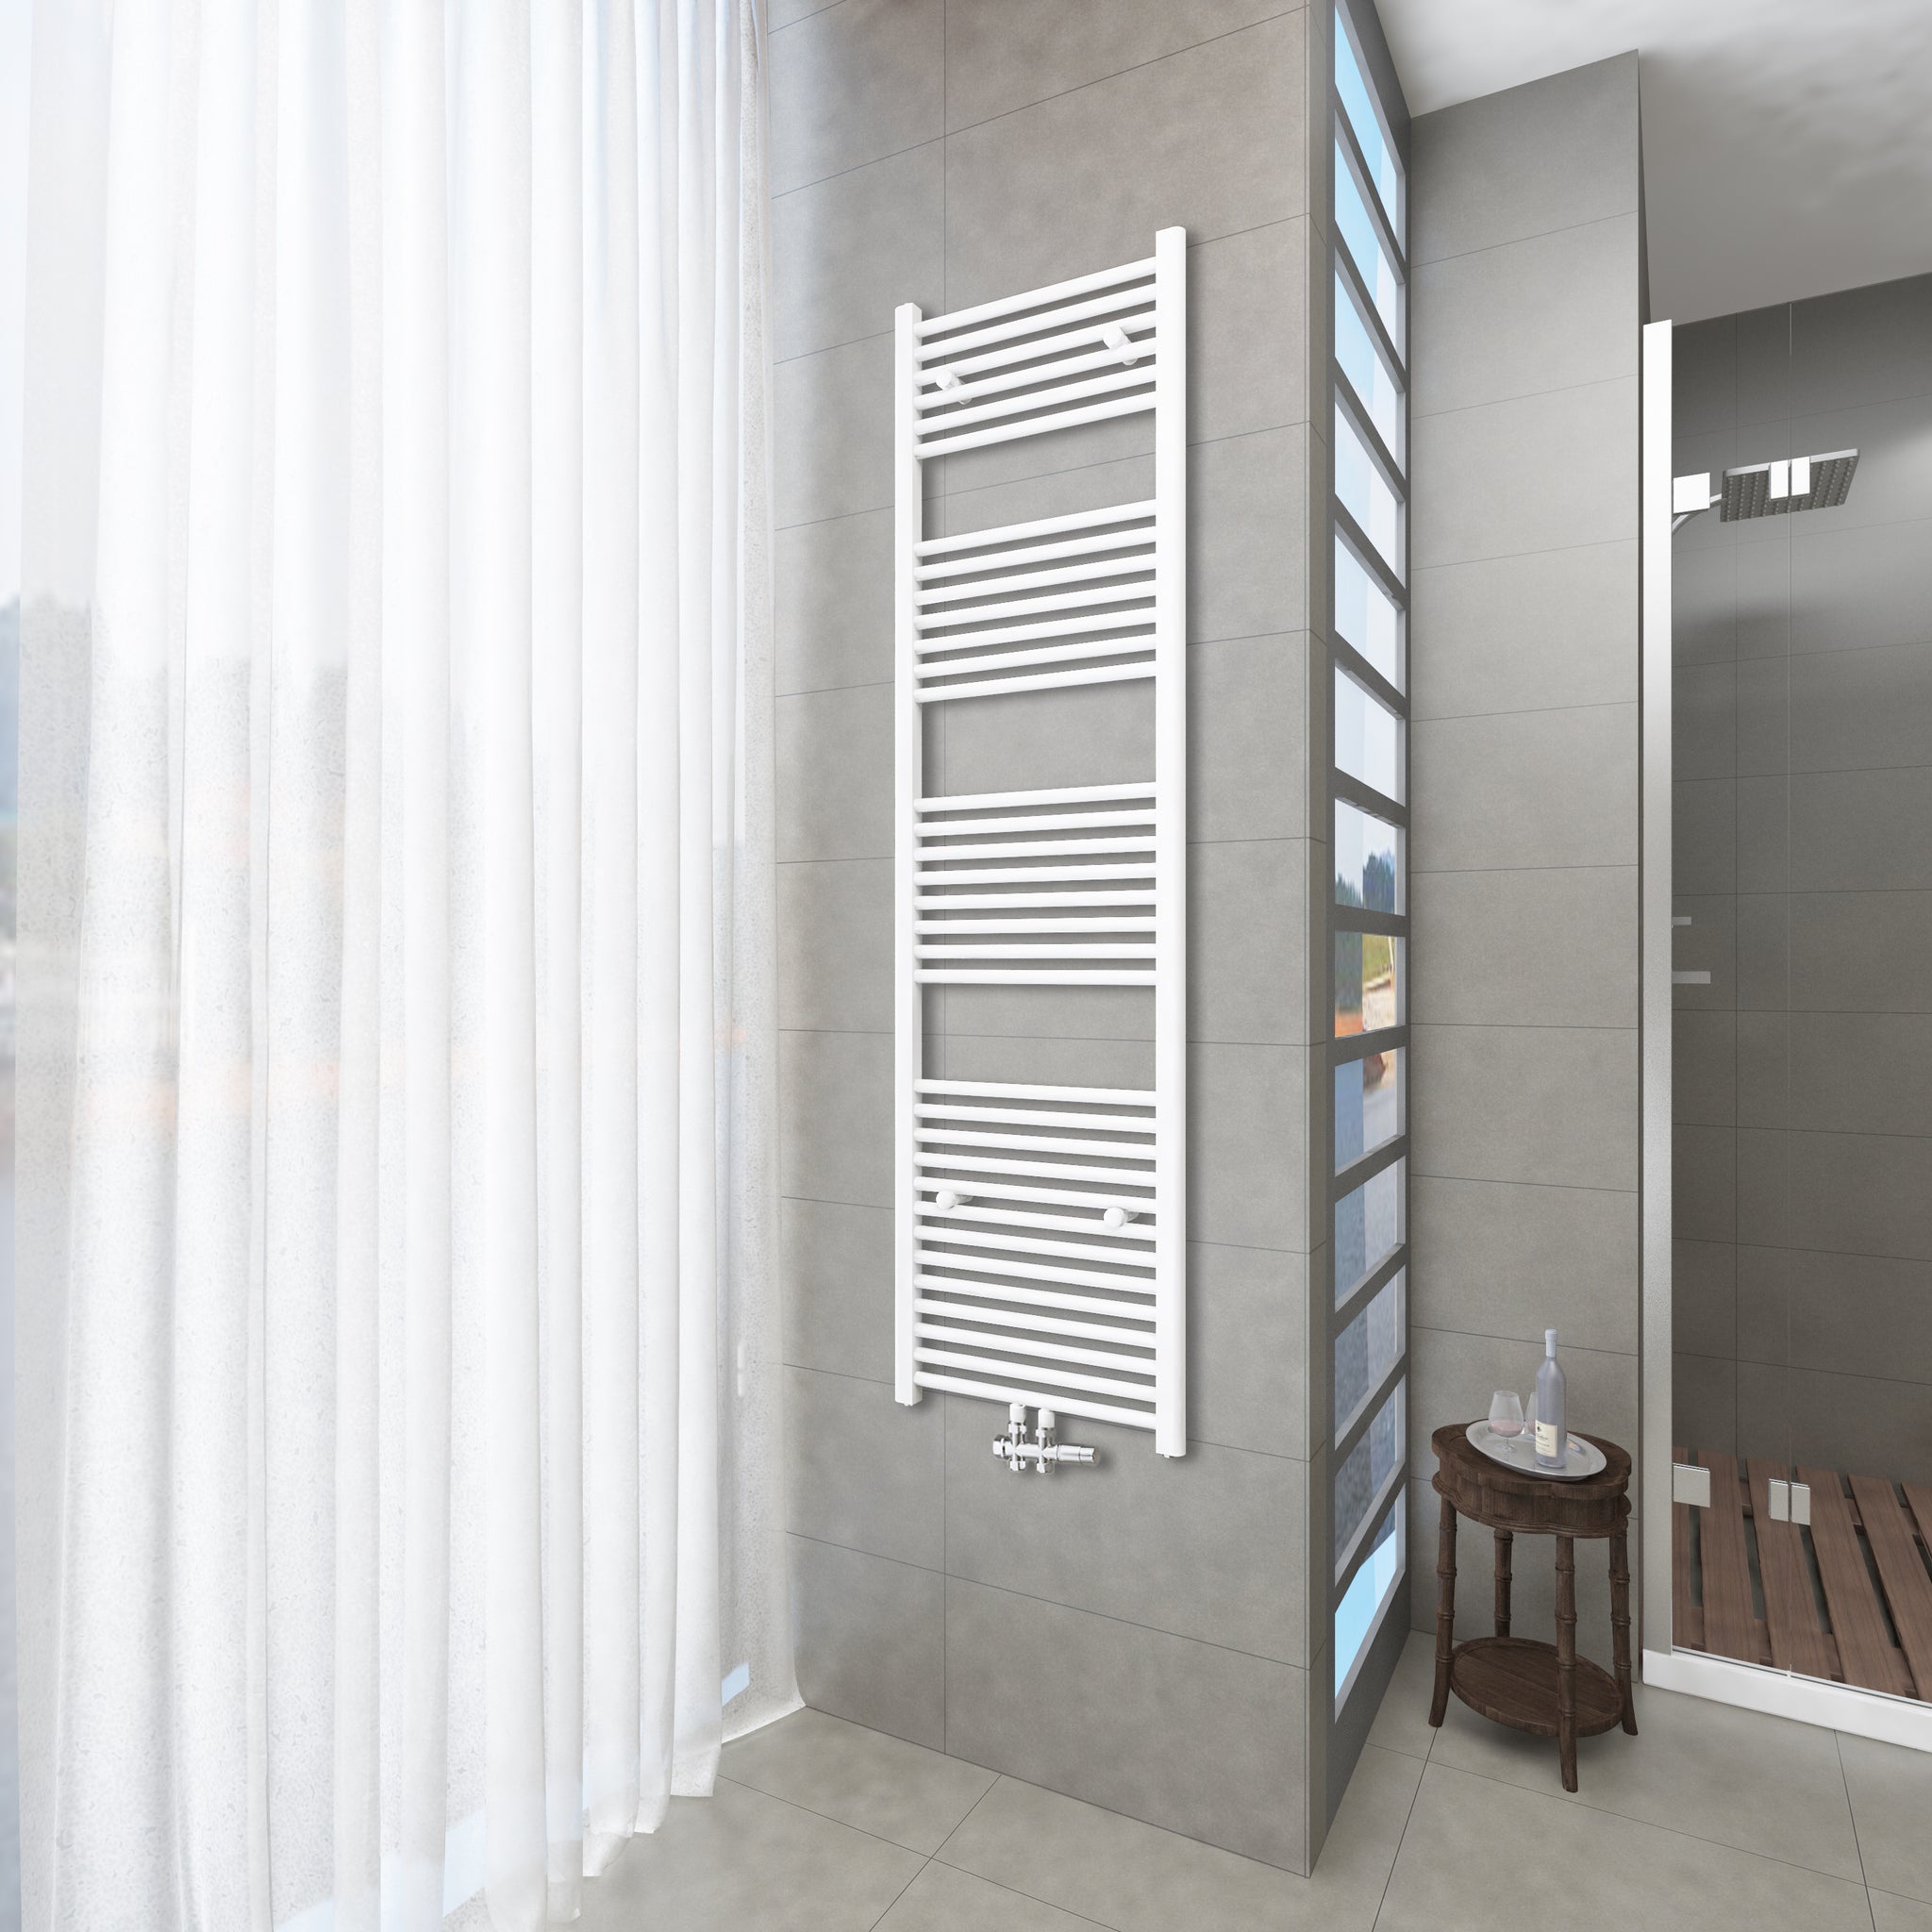 Badheizkörper Weiß - 180x50 CM  Heizkörper und Handtuchtrockner in einem - Mittelanschluss - Rauchfreie Kohleheizung für das Badezimmer